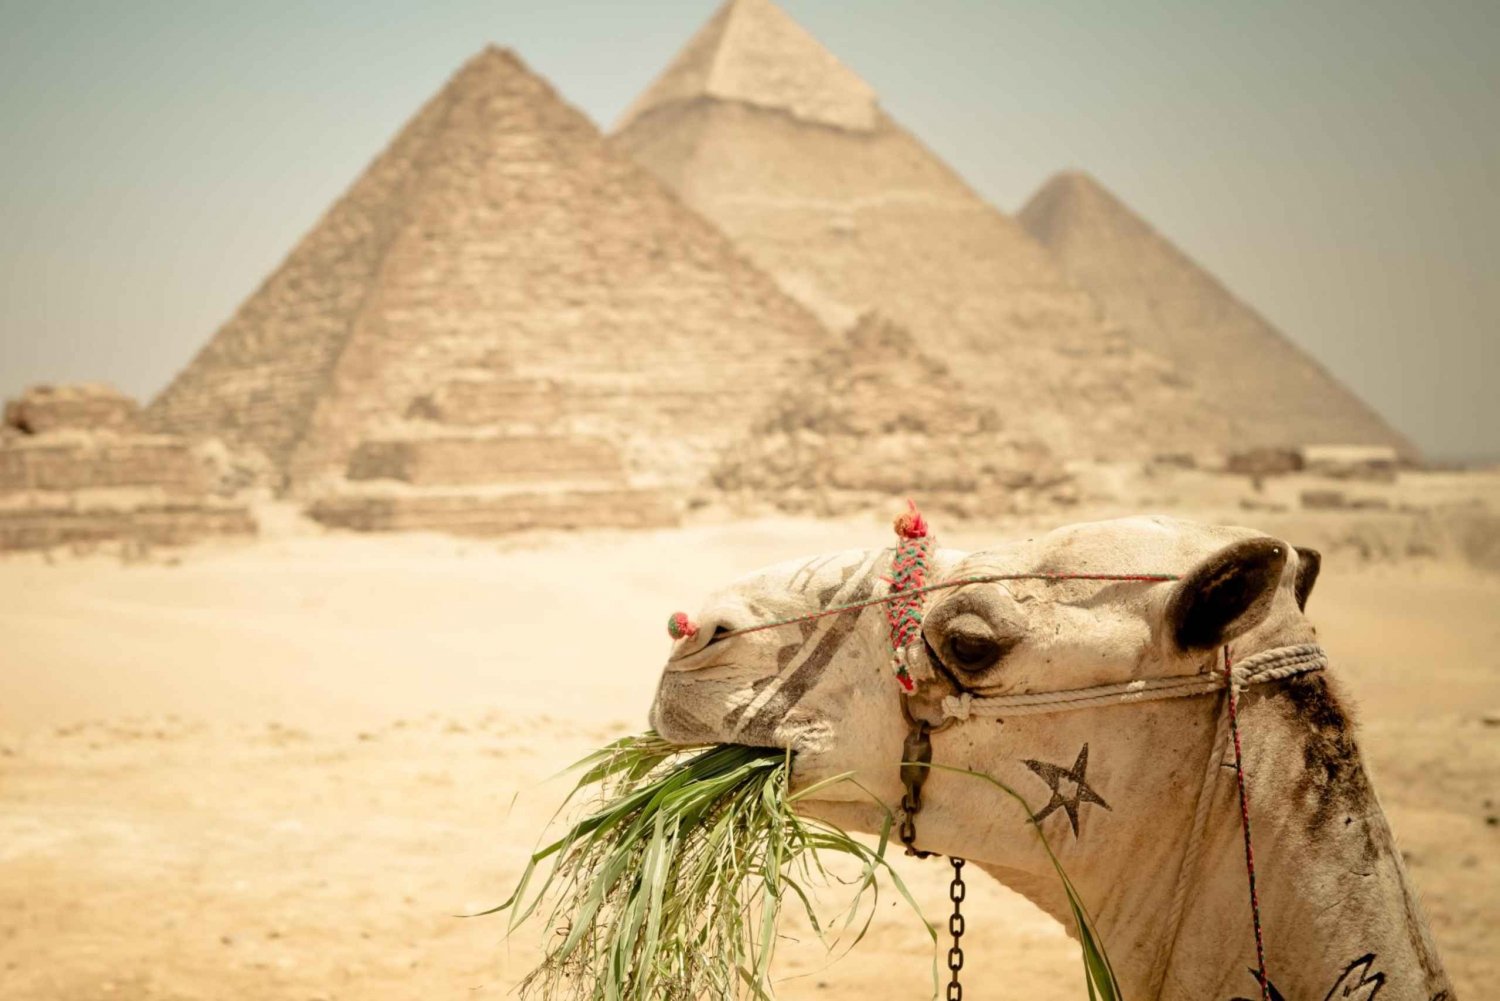 Kair: Wycieczka do piramidy, rejs łodzią i lunch w Cafelucca